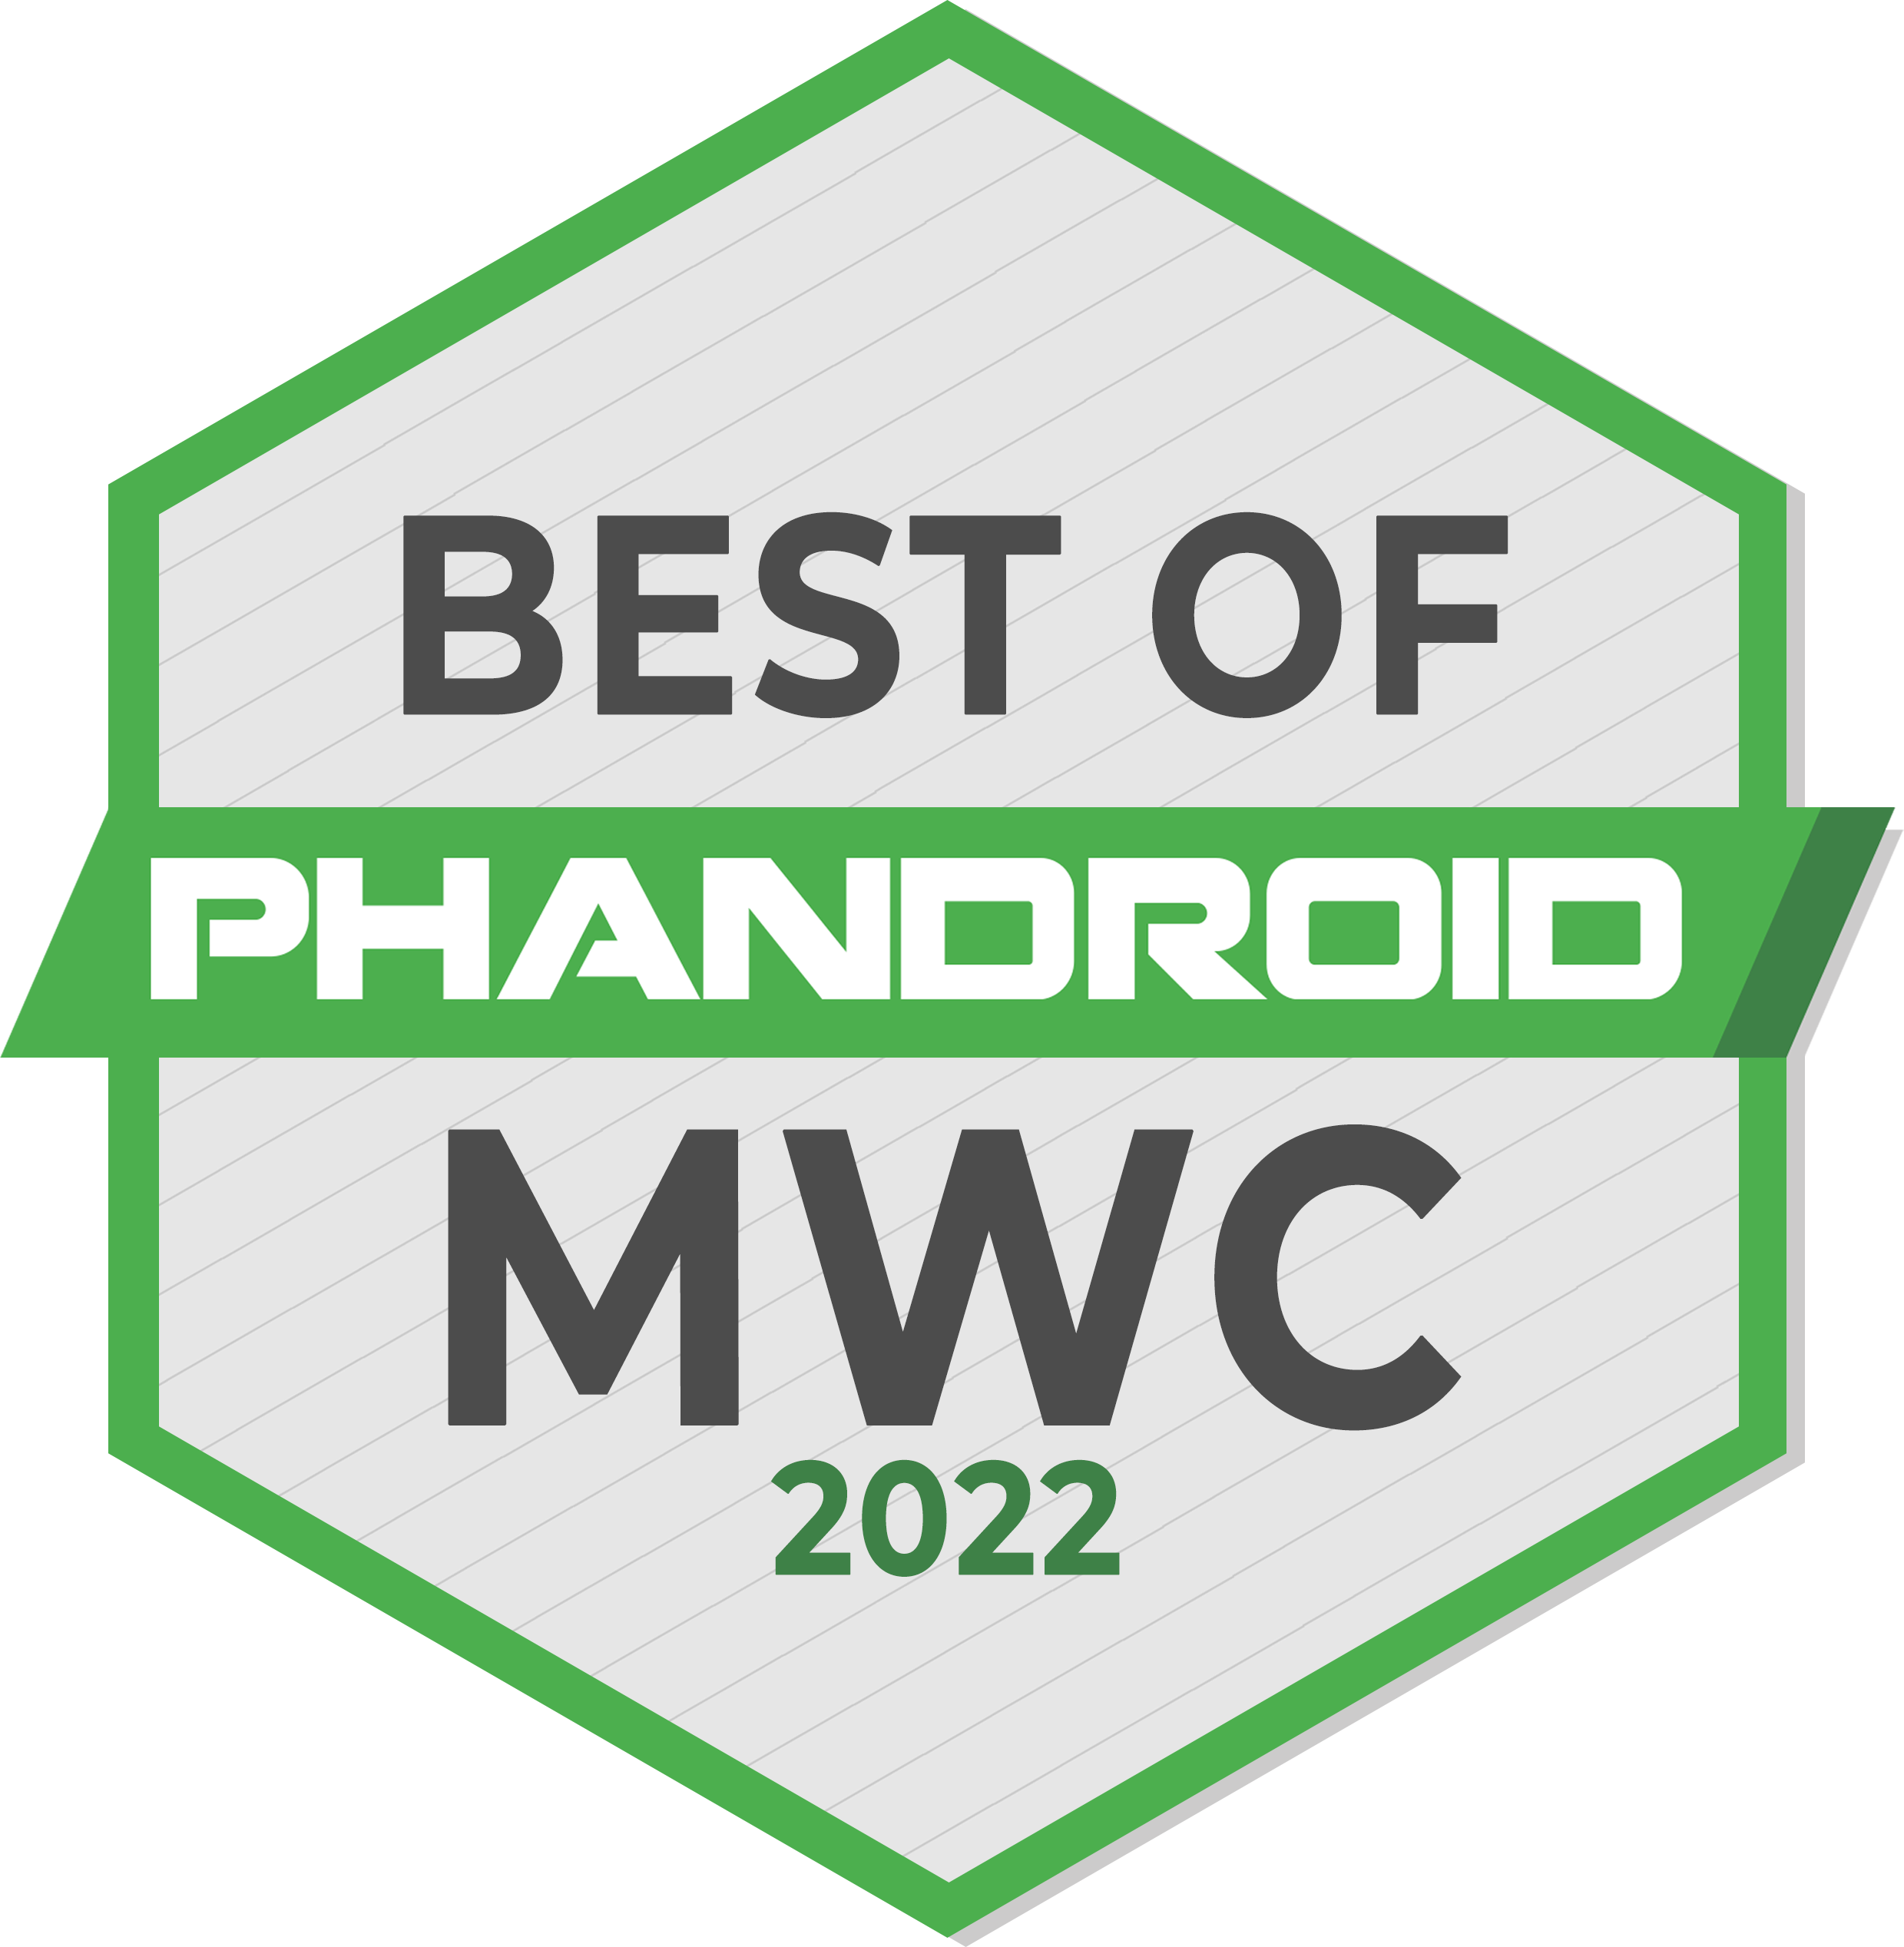 Награда “Best of MWC” от ведущих мировых СМИ 